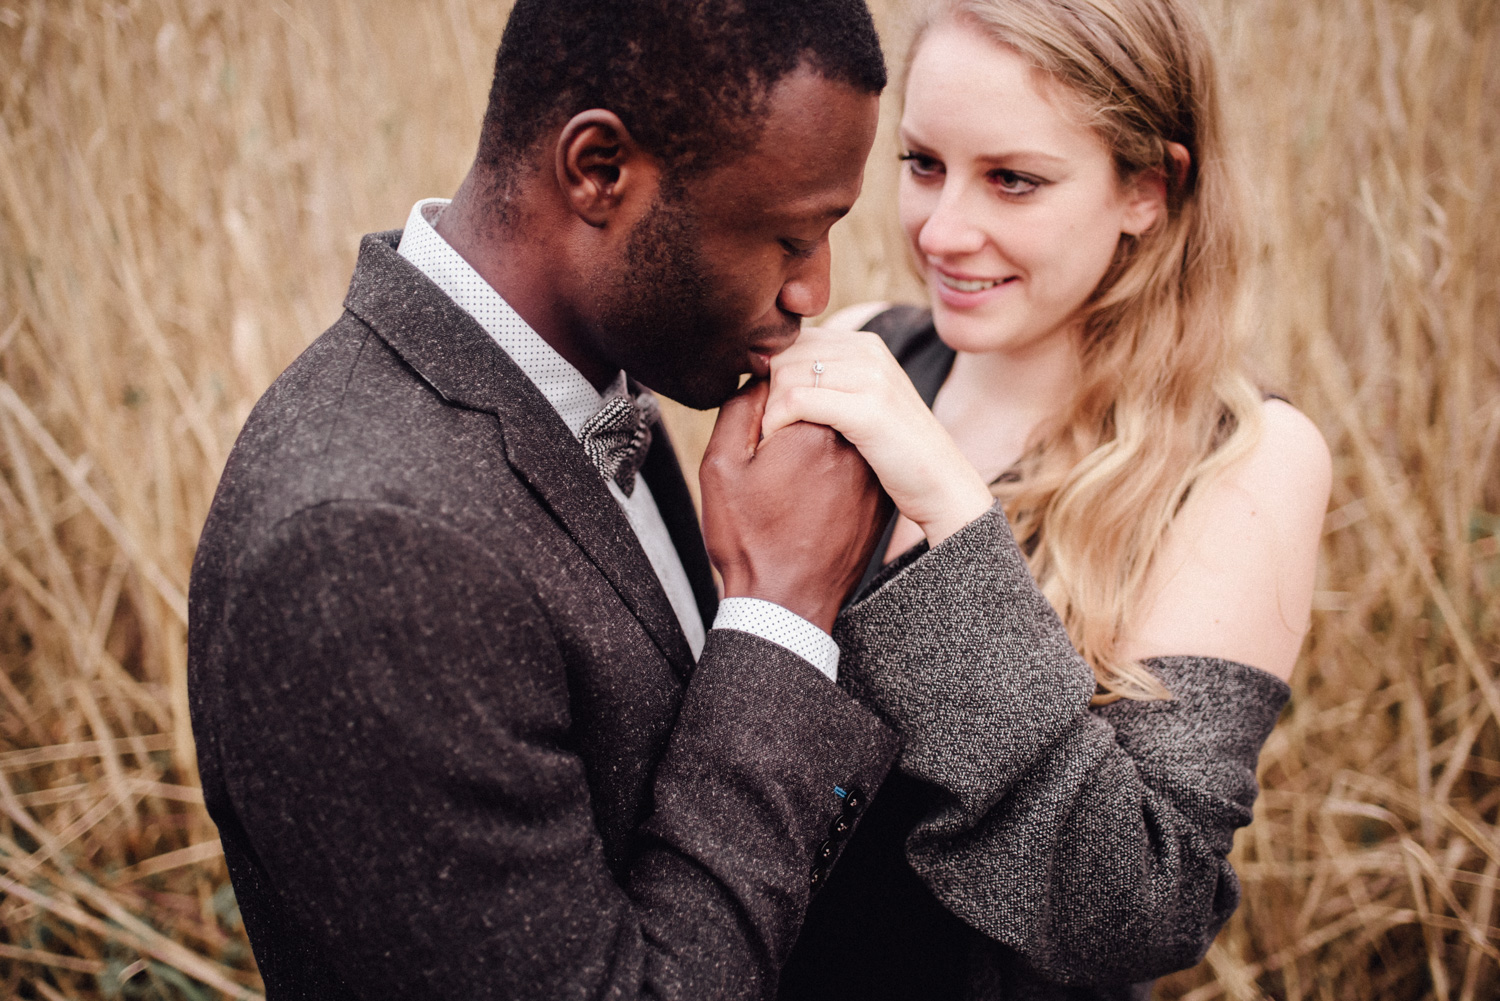 Mann küsst die Hand seiner Verlobten, an der sie einen Verlobungsring trägt.